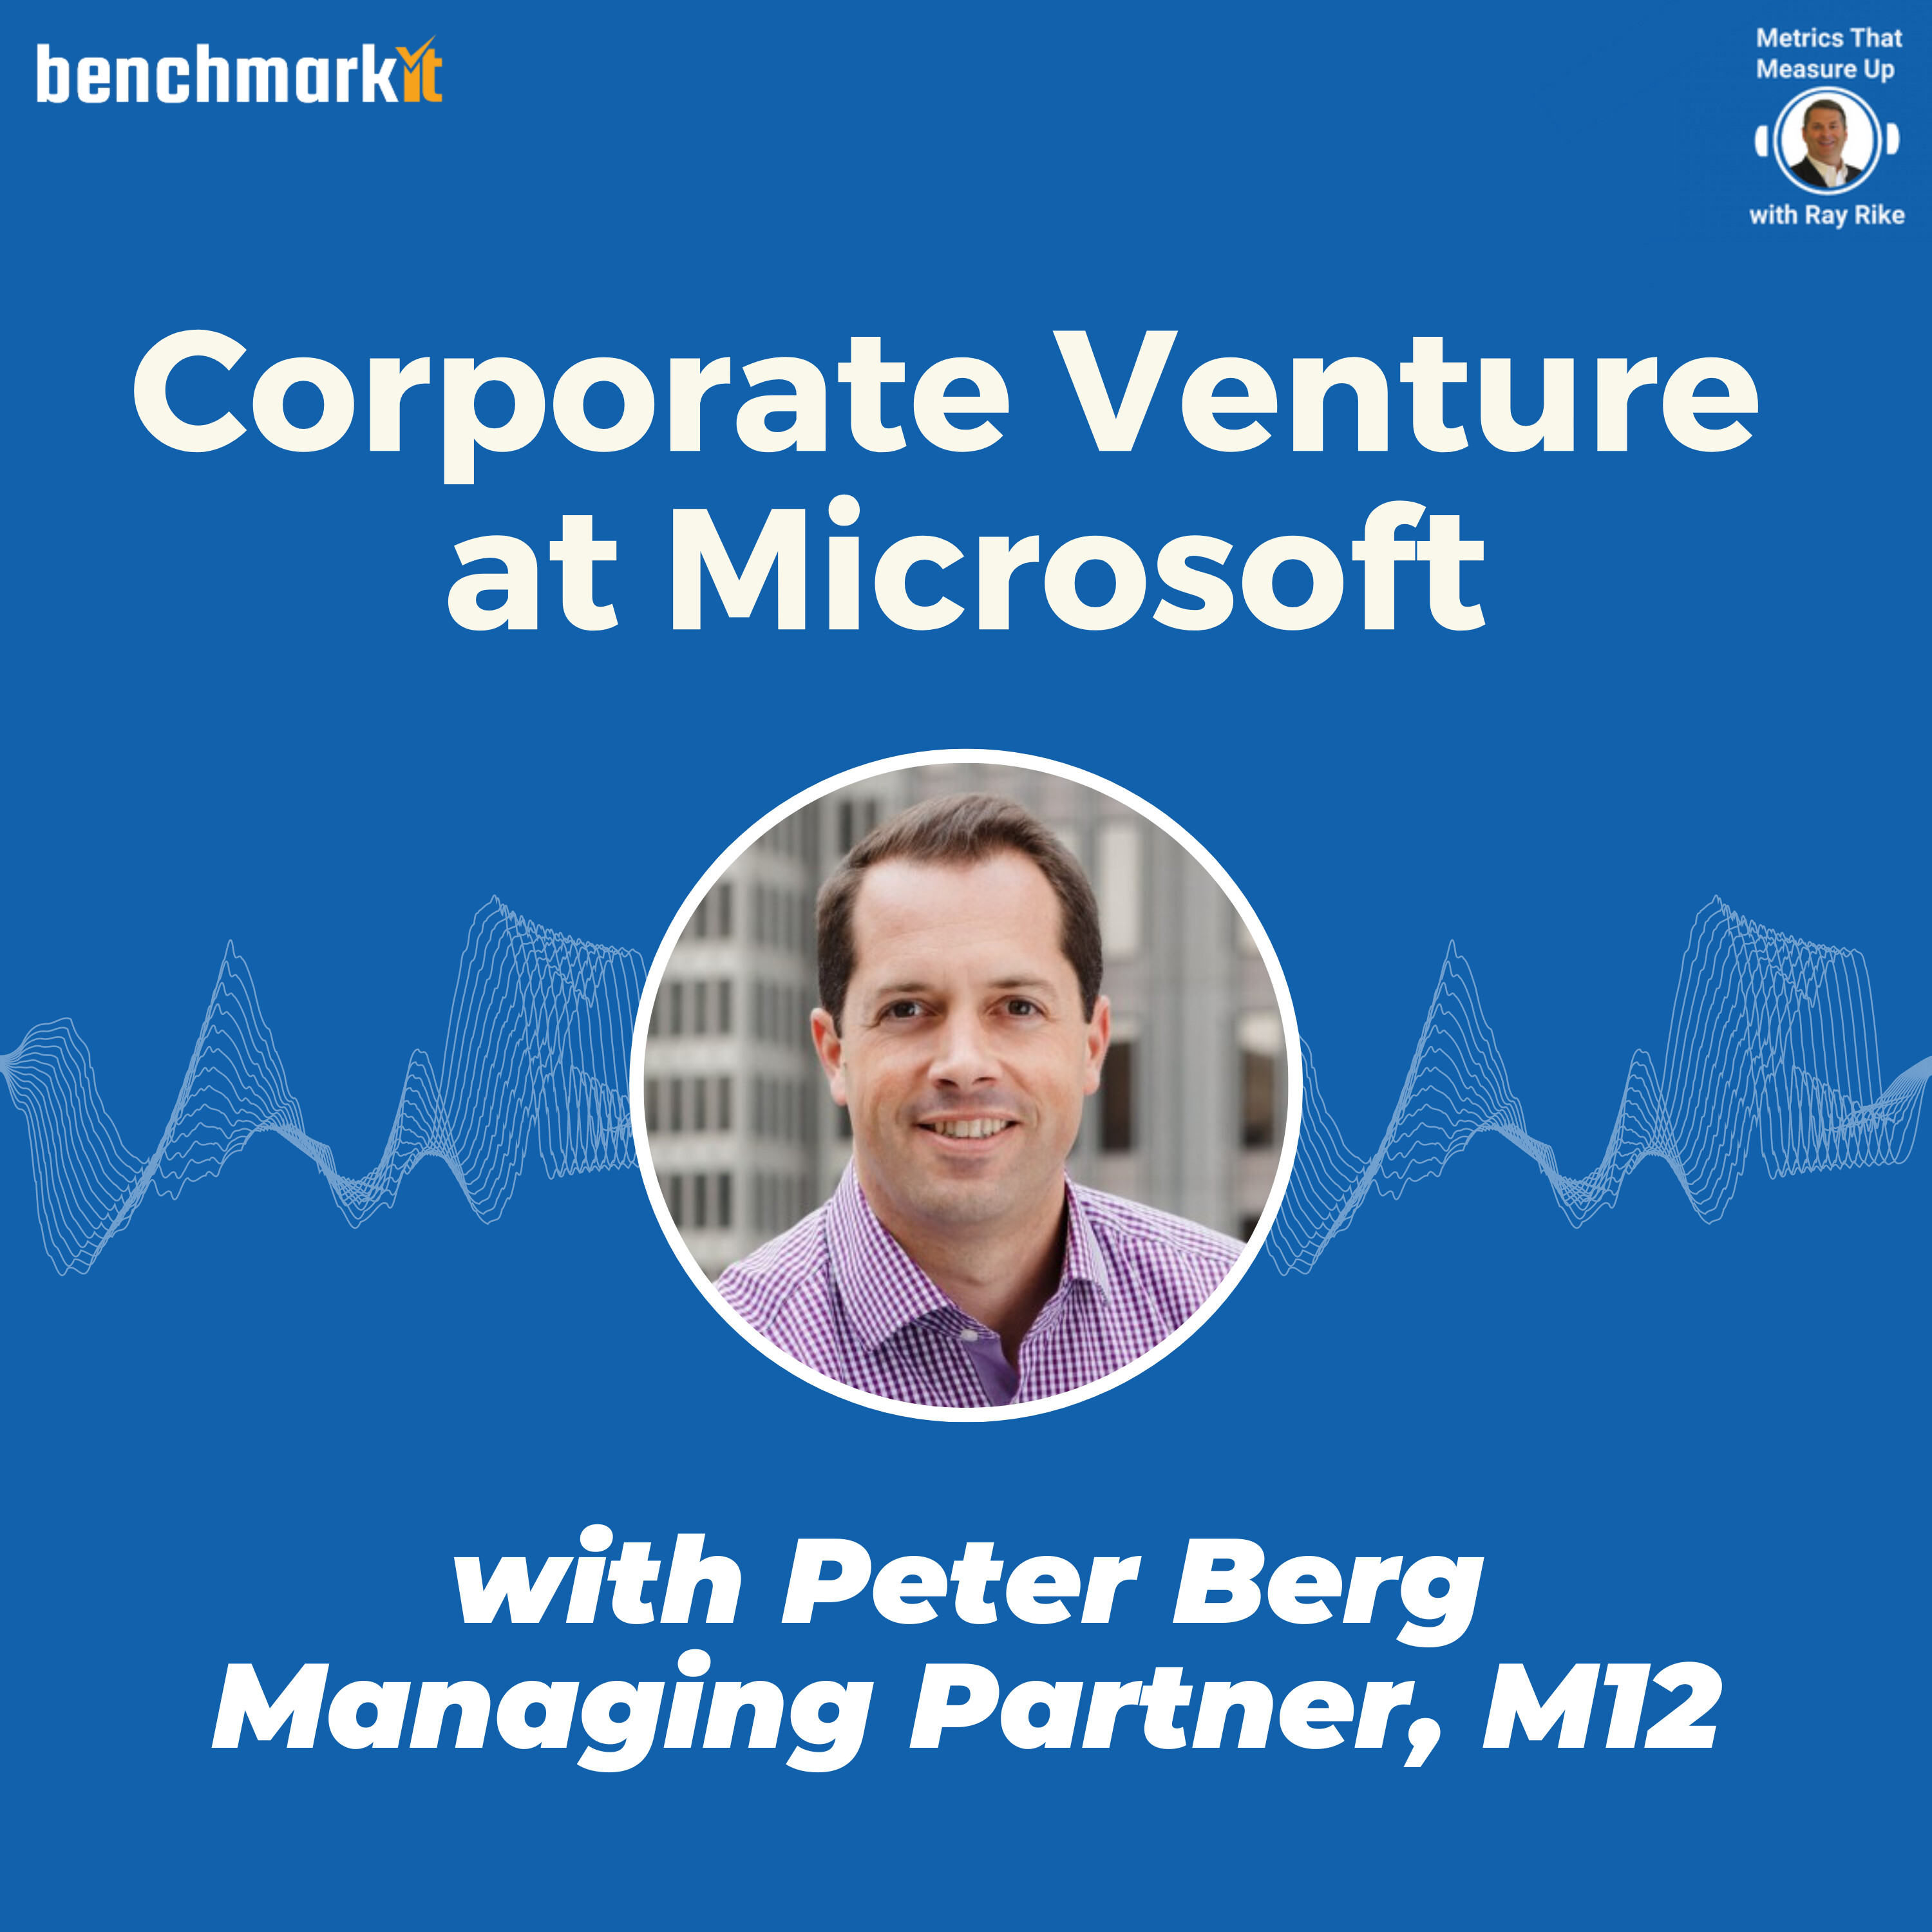 Corporate Venture Capital Investing at Microsoft - with Peter Berg, Managing Partner at M12